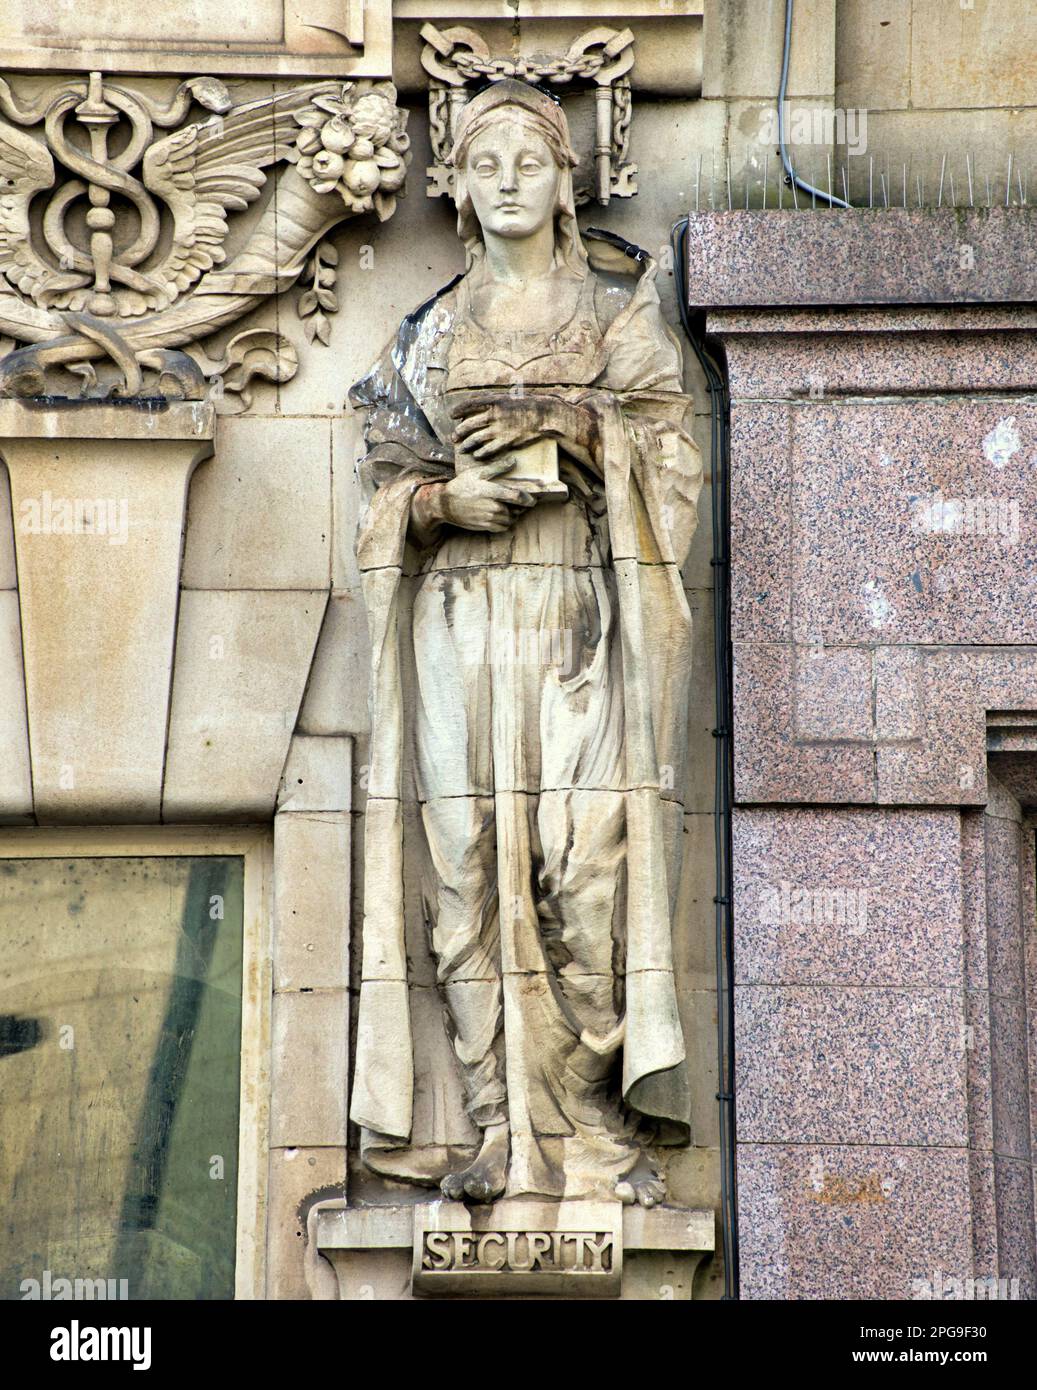 Eine von vier Skulpturen der Allegorien das Allegory of Security von Phyllis Archibald auf einem alten Bankgebäude am St. enoch Square in Glasgow, Großbritannien Stockfoto